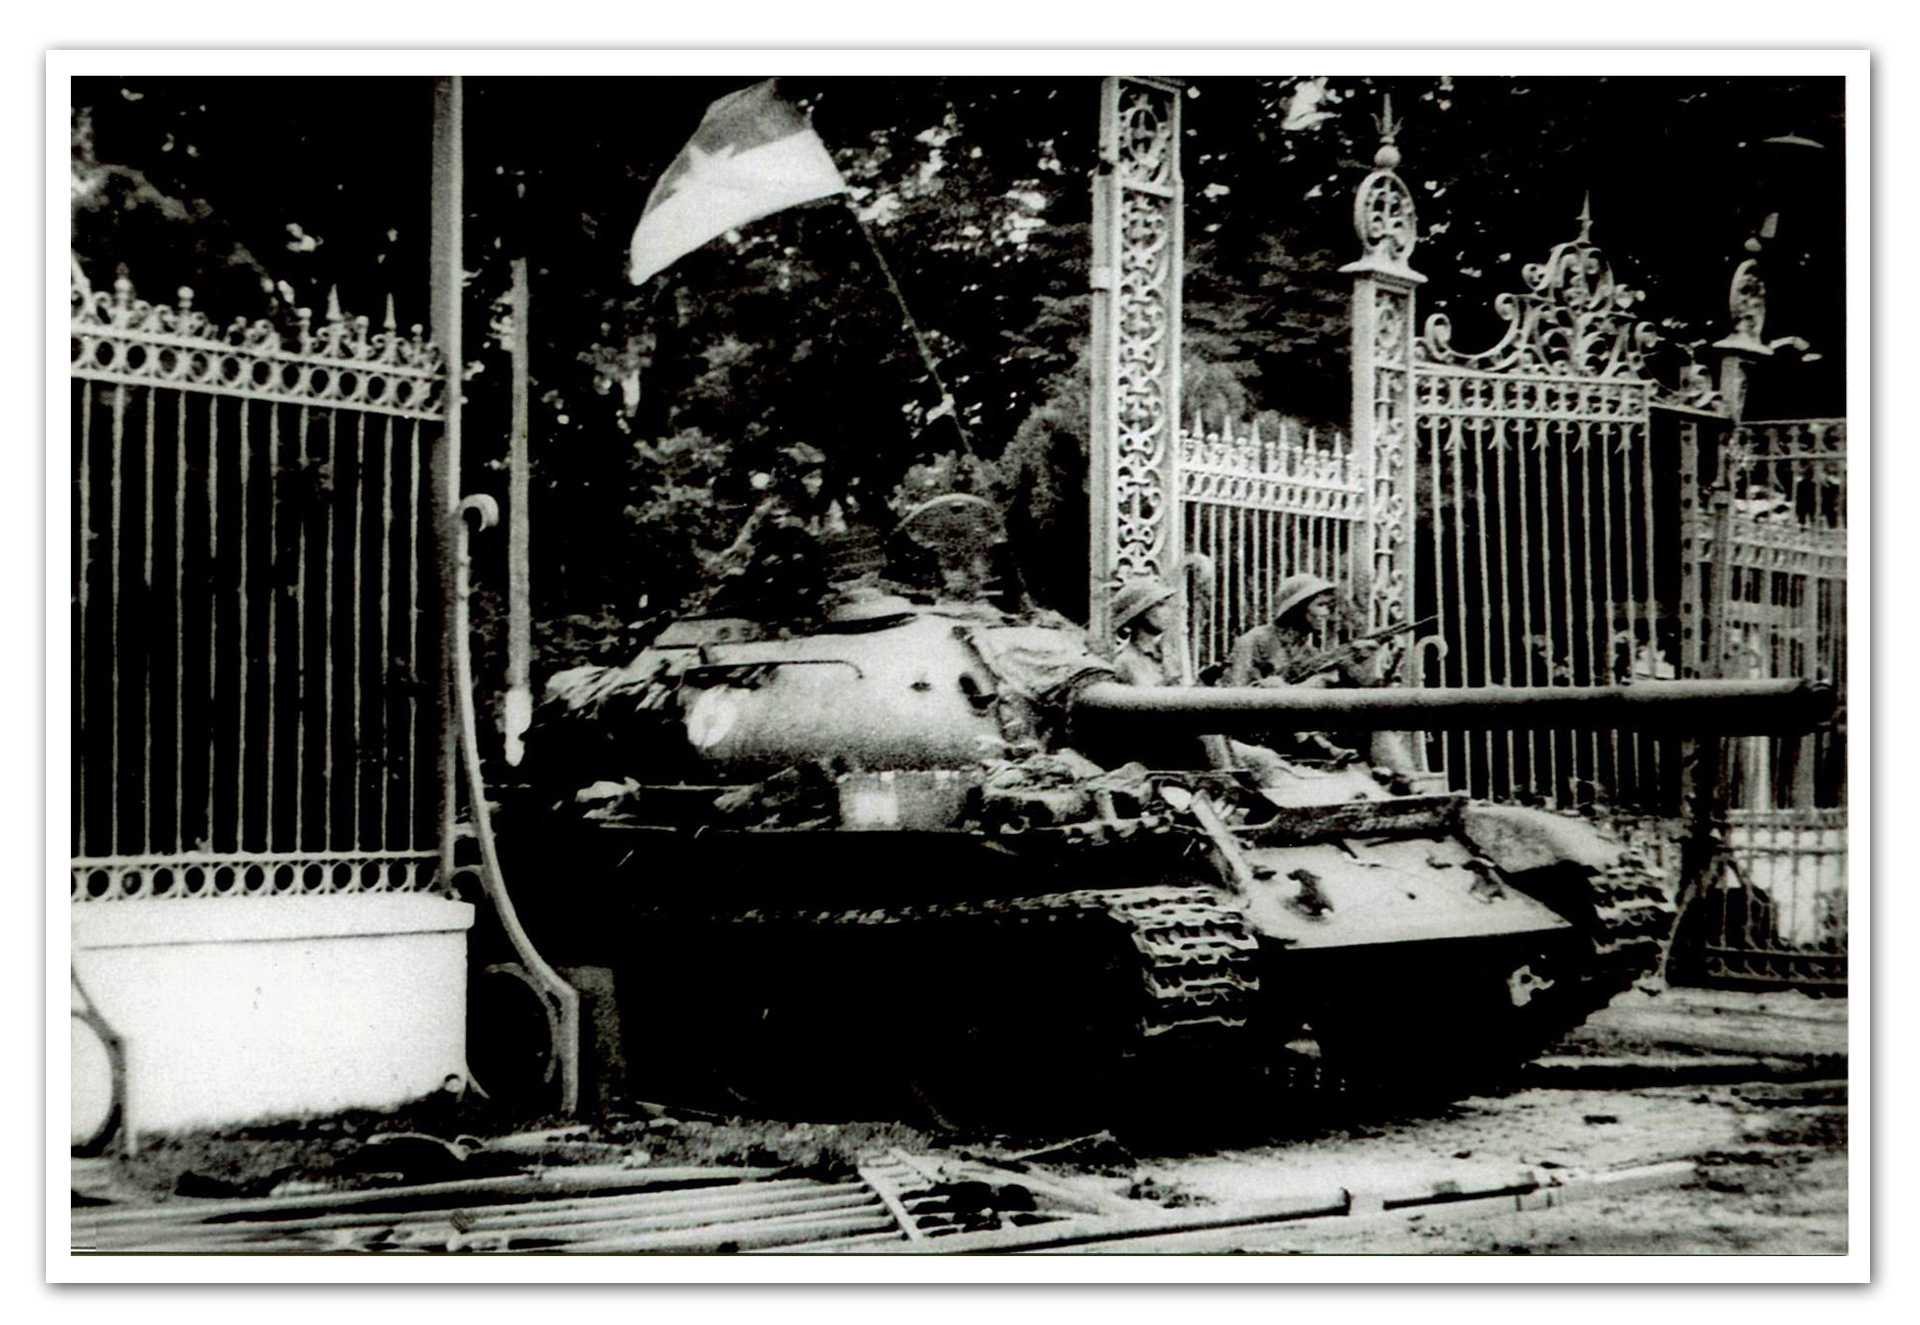 Bức ảnh lịch sử chiếc xe tăng sẽ khiến bạn ngỡ ngàng trước giàn xe tăng đặc biệt này. Đó là một sản phẩm của sự thành công và quyết tâm của những người lính Việt Nam ngày xưa, bảo vệ sự tự do và độc lập cho đất nước. Hãy đến để được chiêm ngưỡng bức ảnh này.